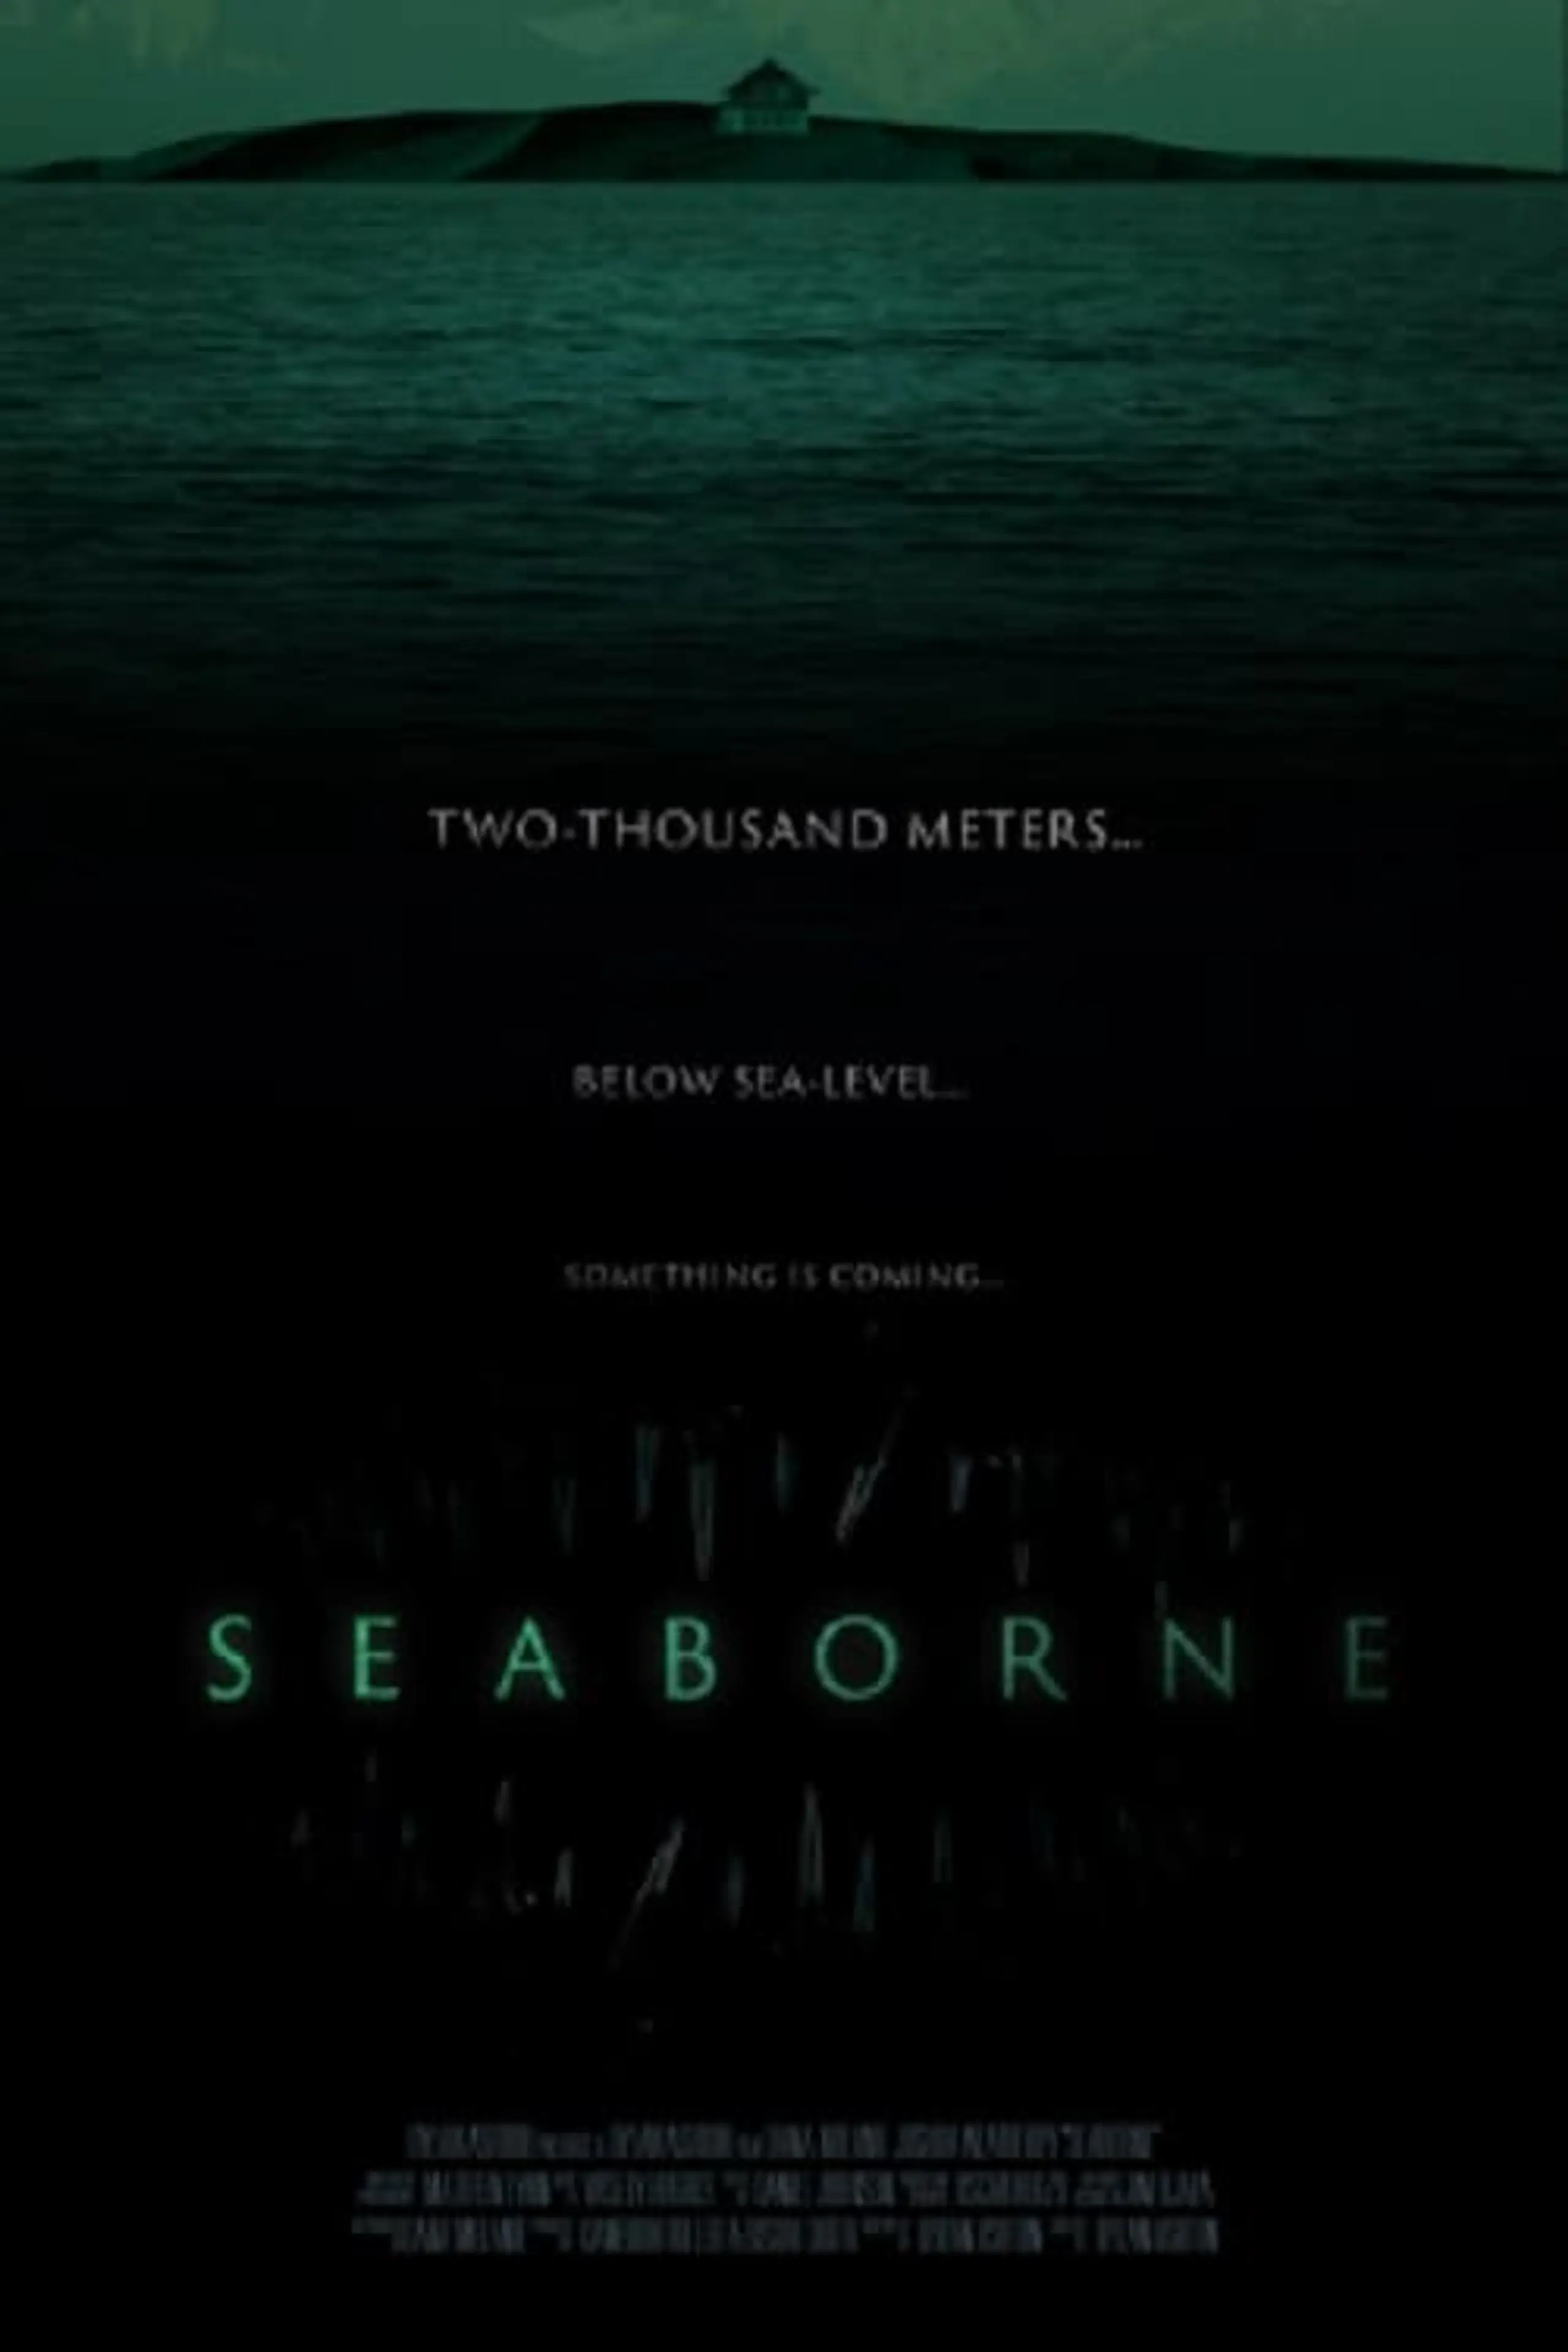 Seaborne